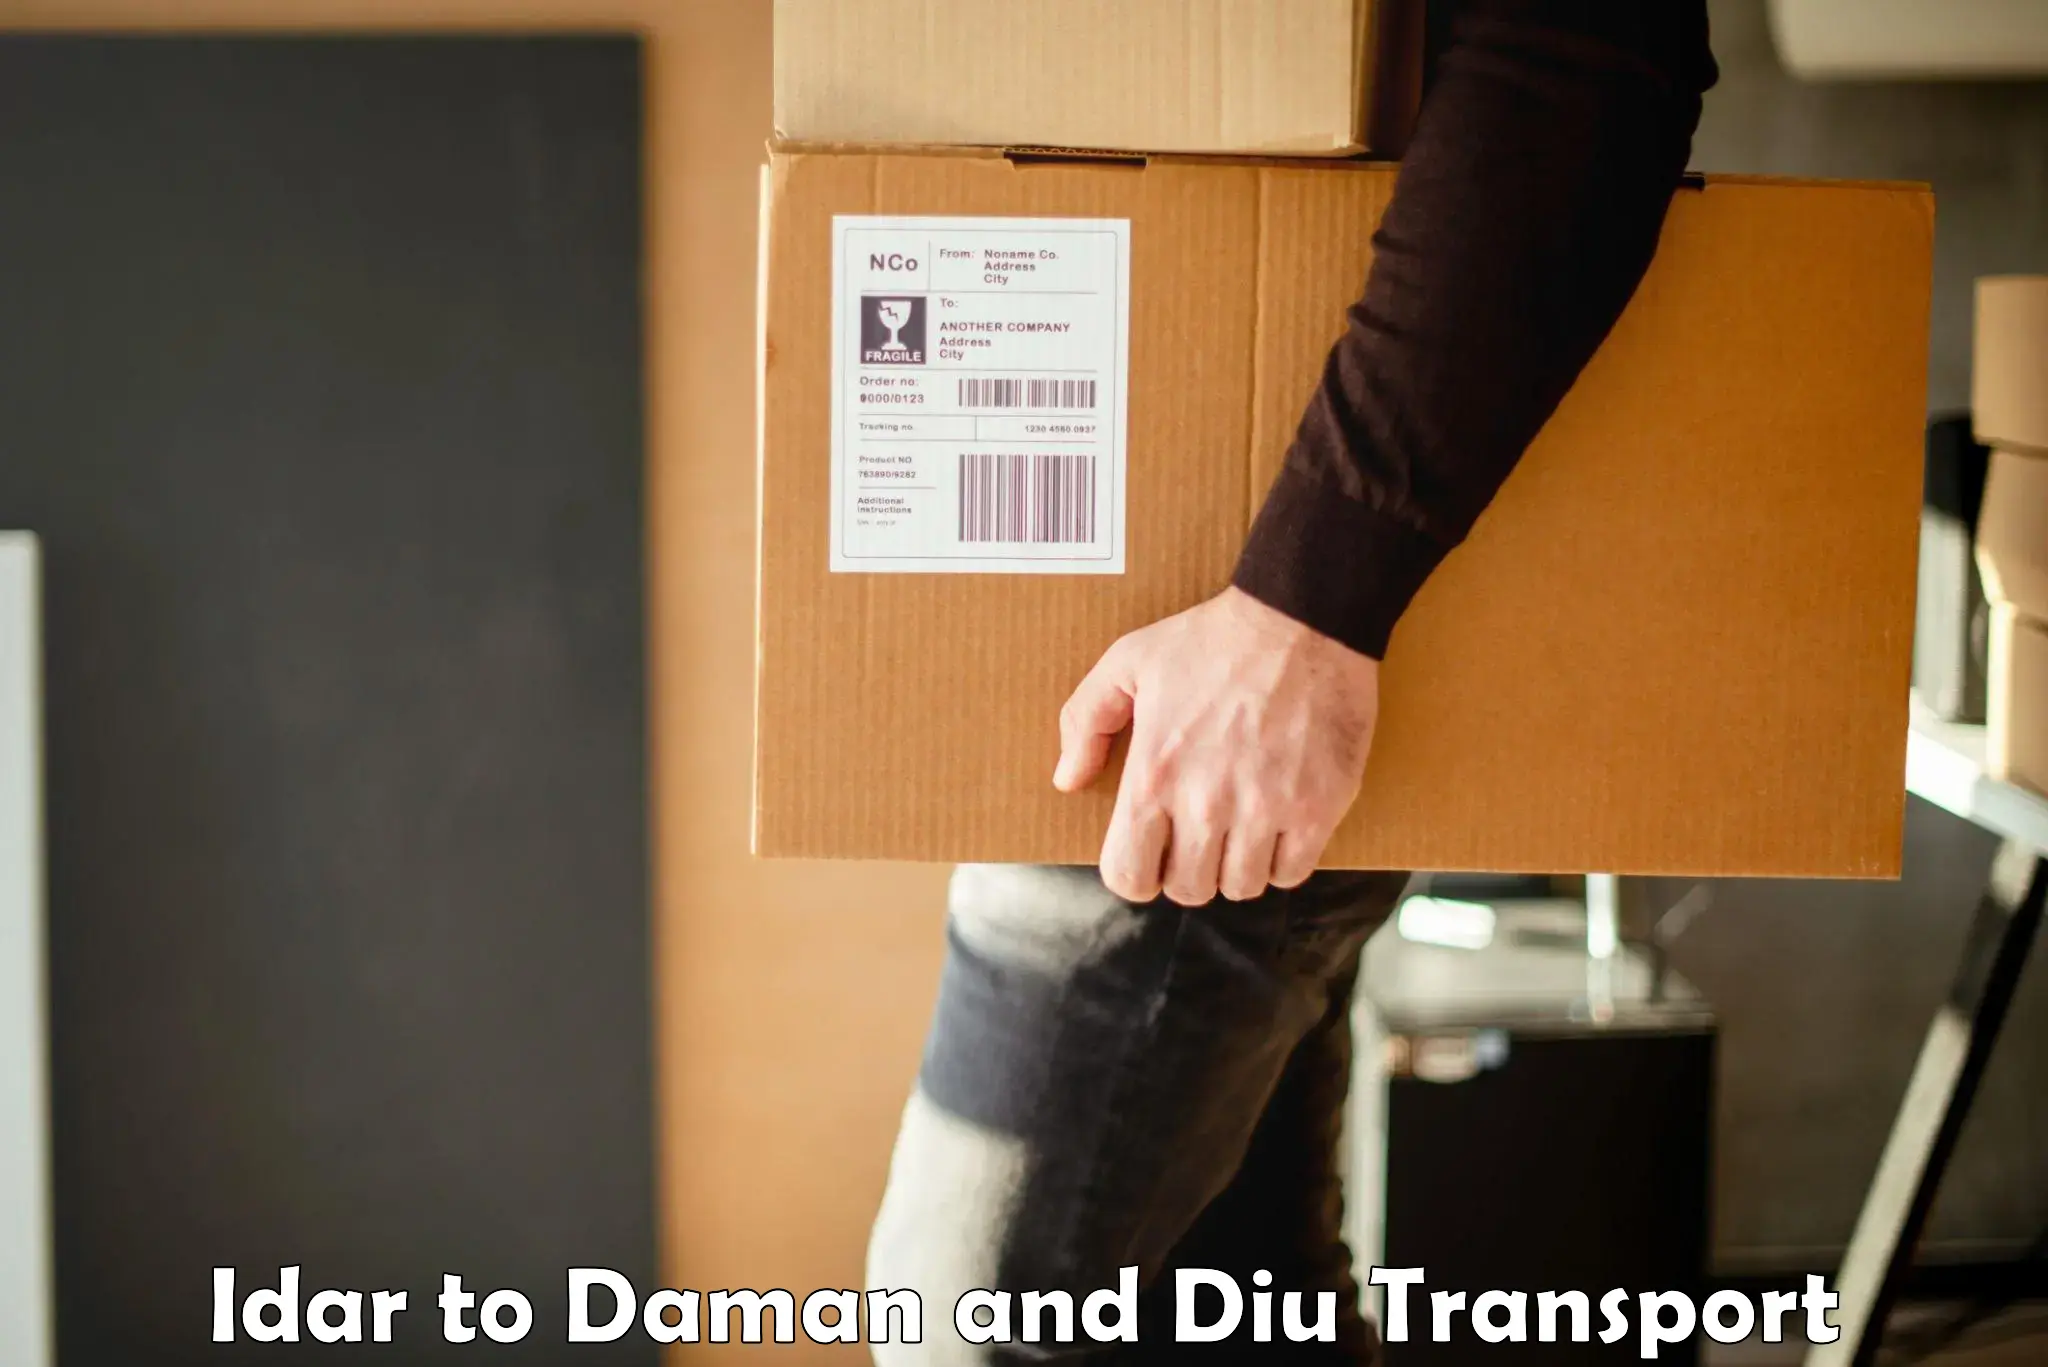 Furniture transport service Idar to Daman and Diu